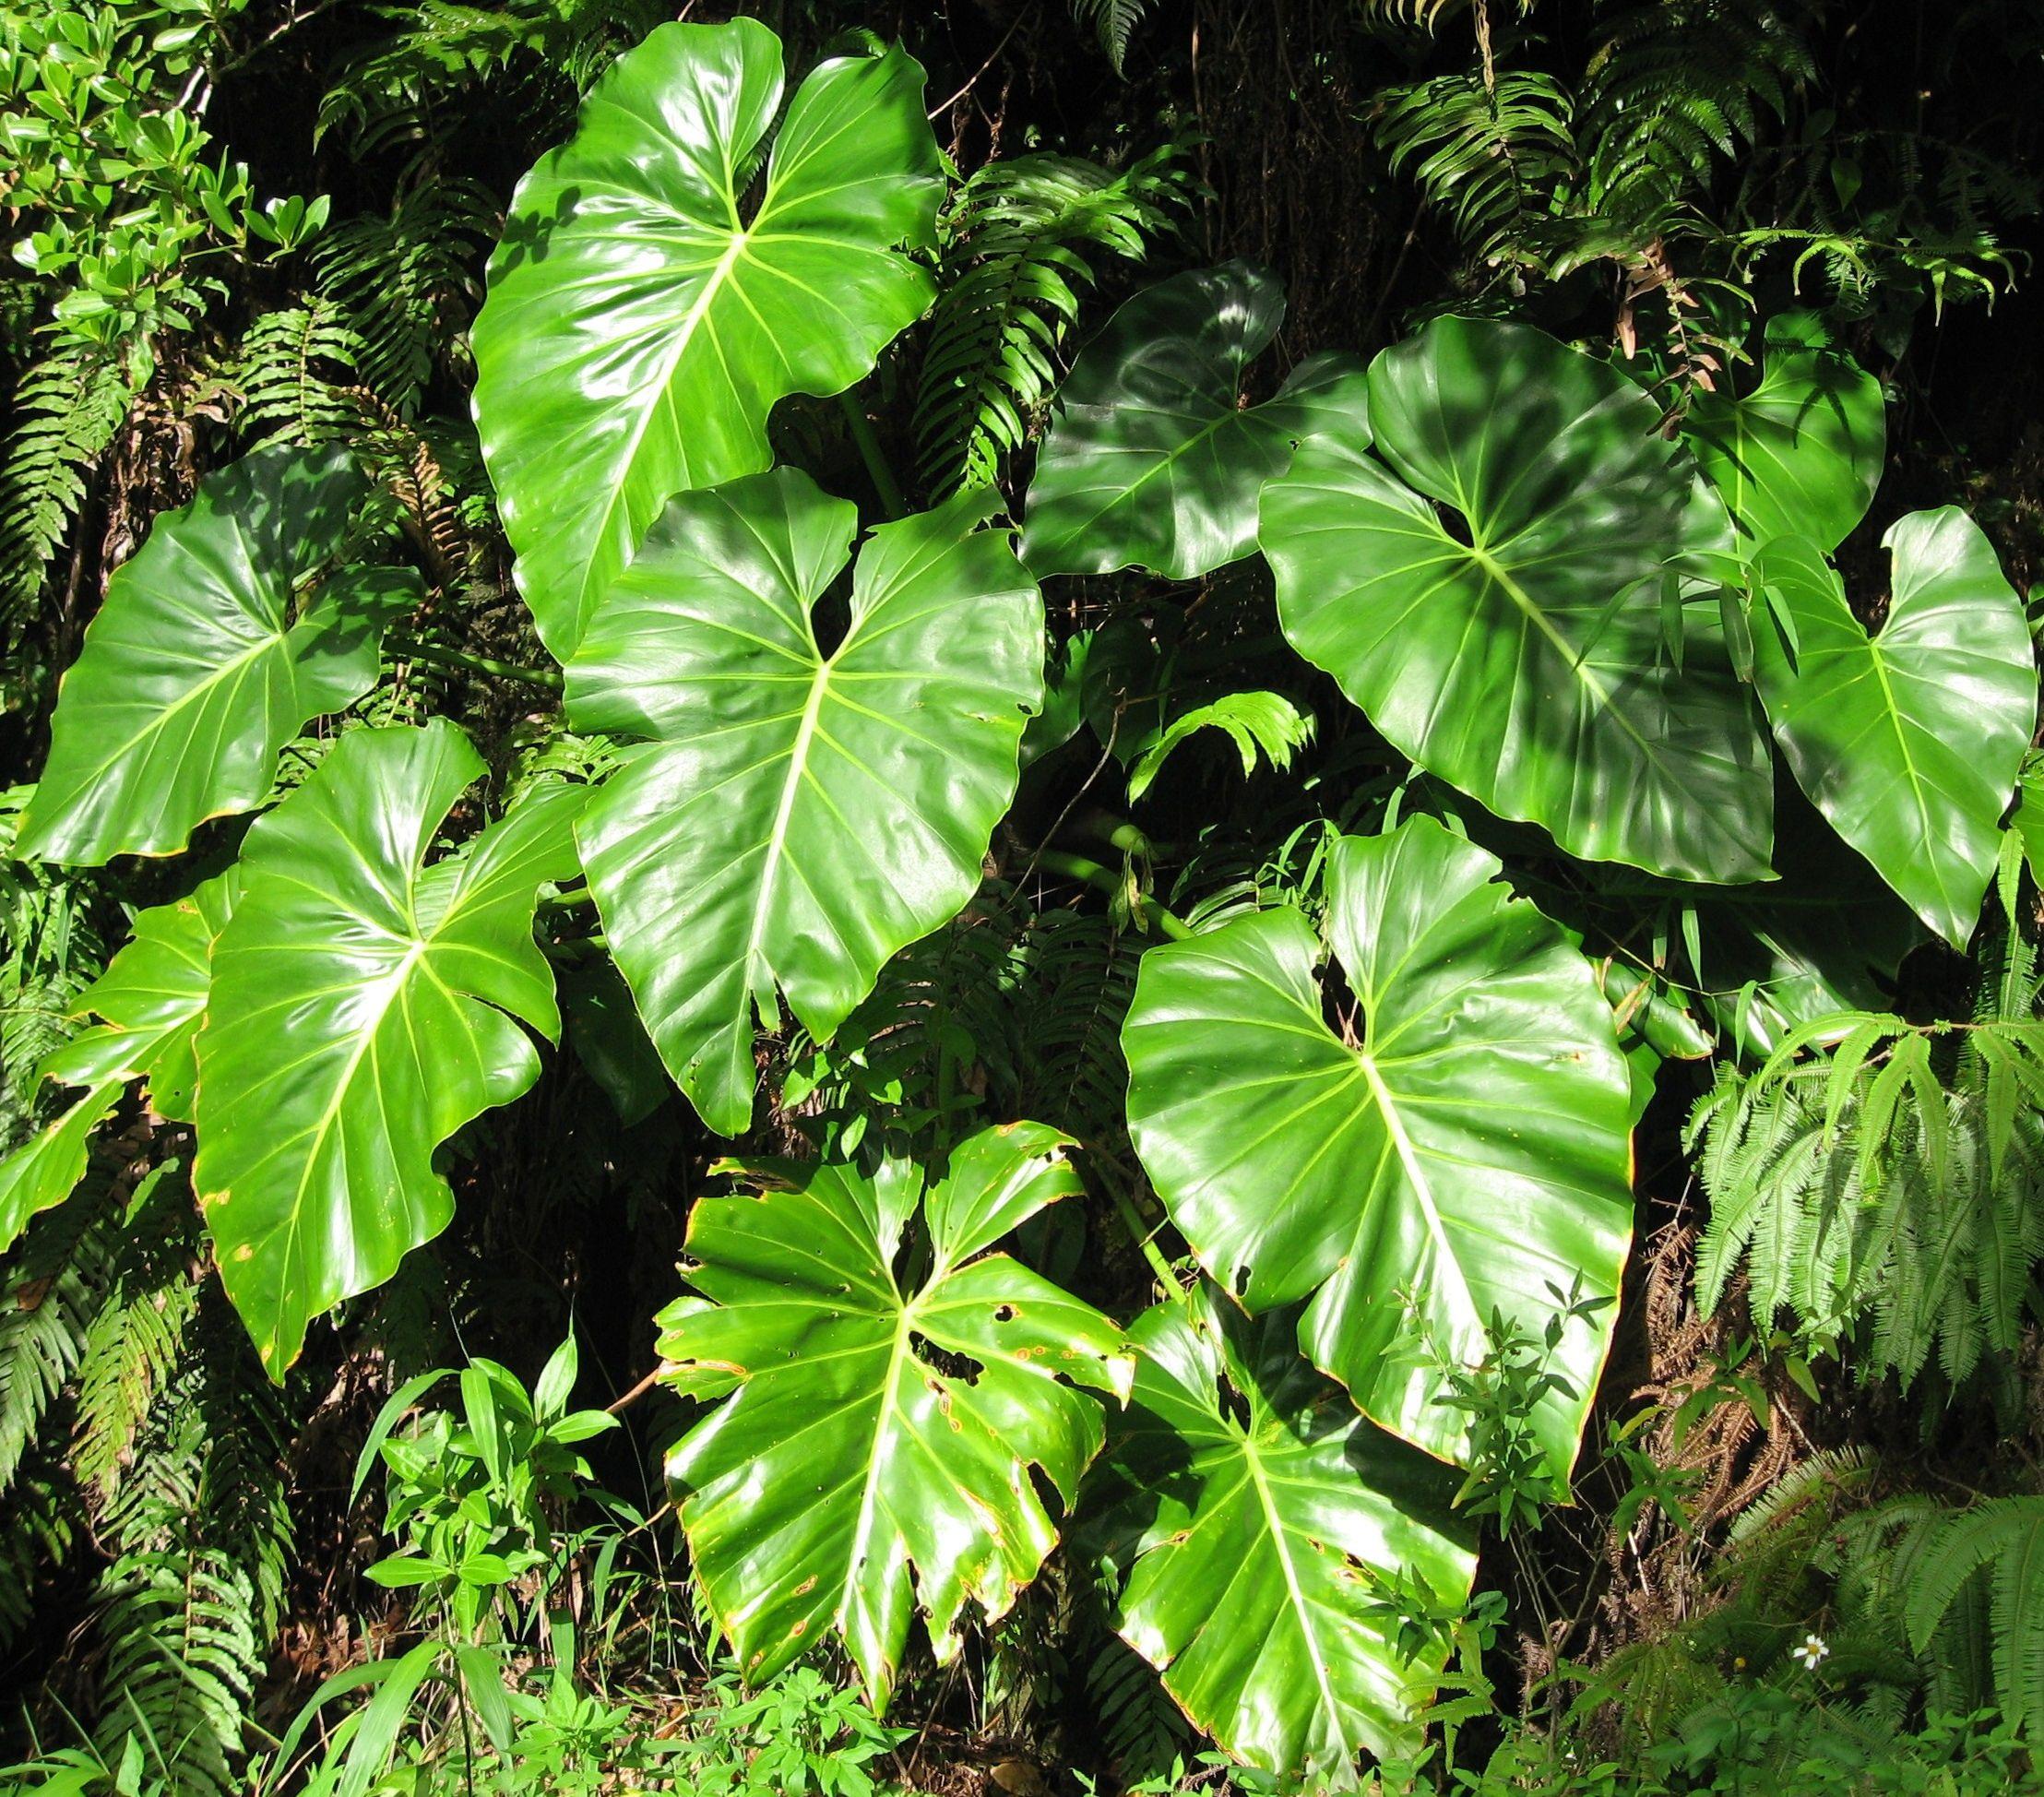 Комнатное растение филодендрон: многообразие видов, описание разновидностей